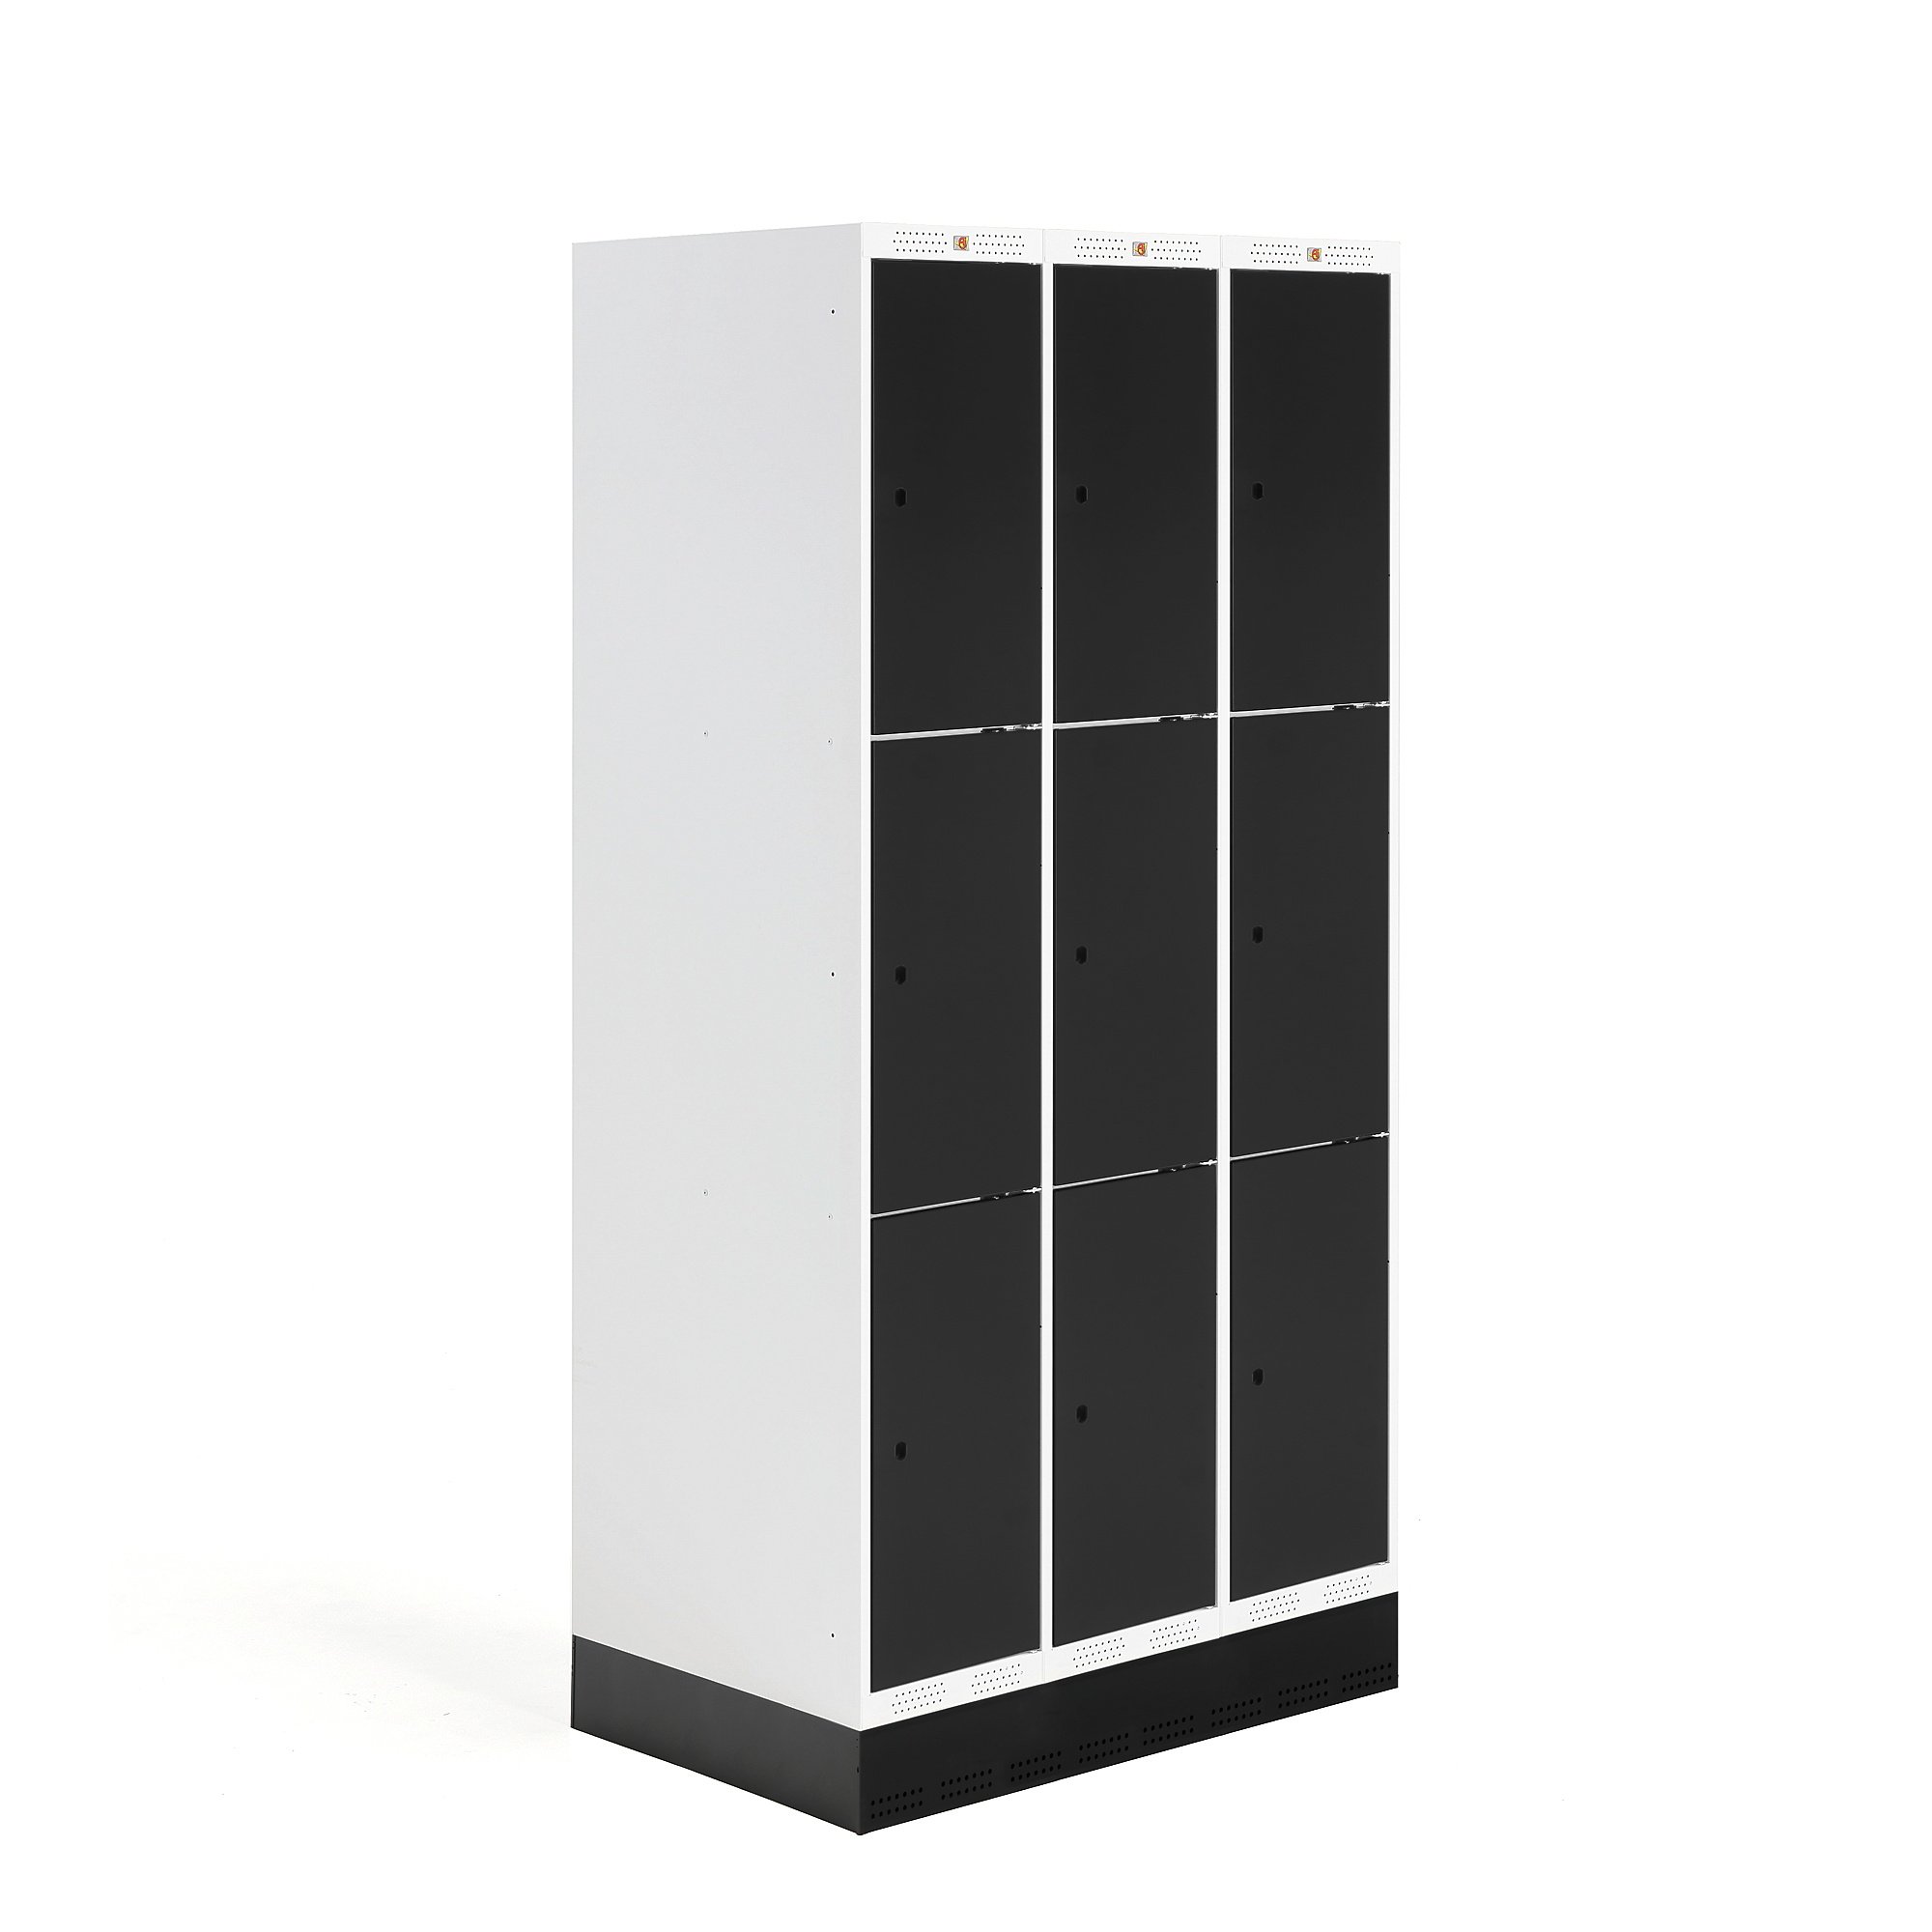 E-shop Školská šatňová skrinka ROZ, 3 sekcie, 9 dverí, 1890x900x550 mm, čierna, so soklom